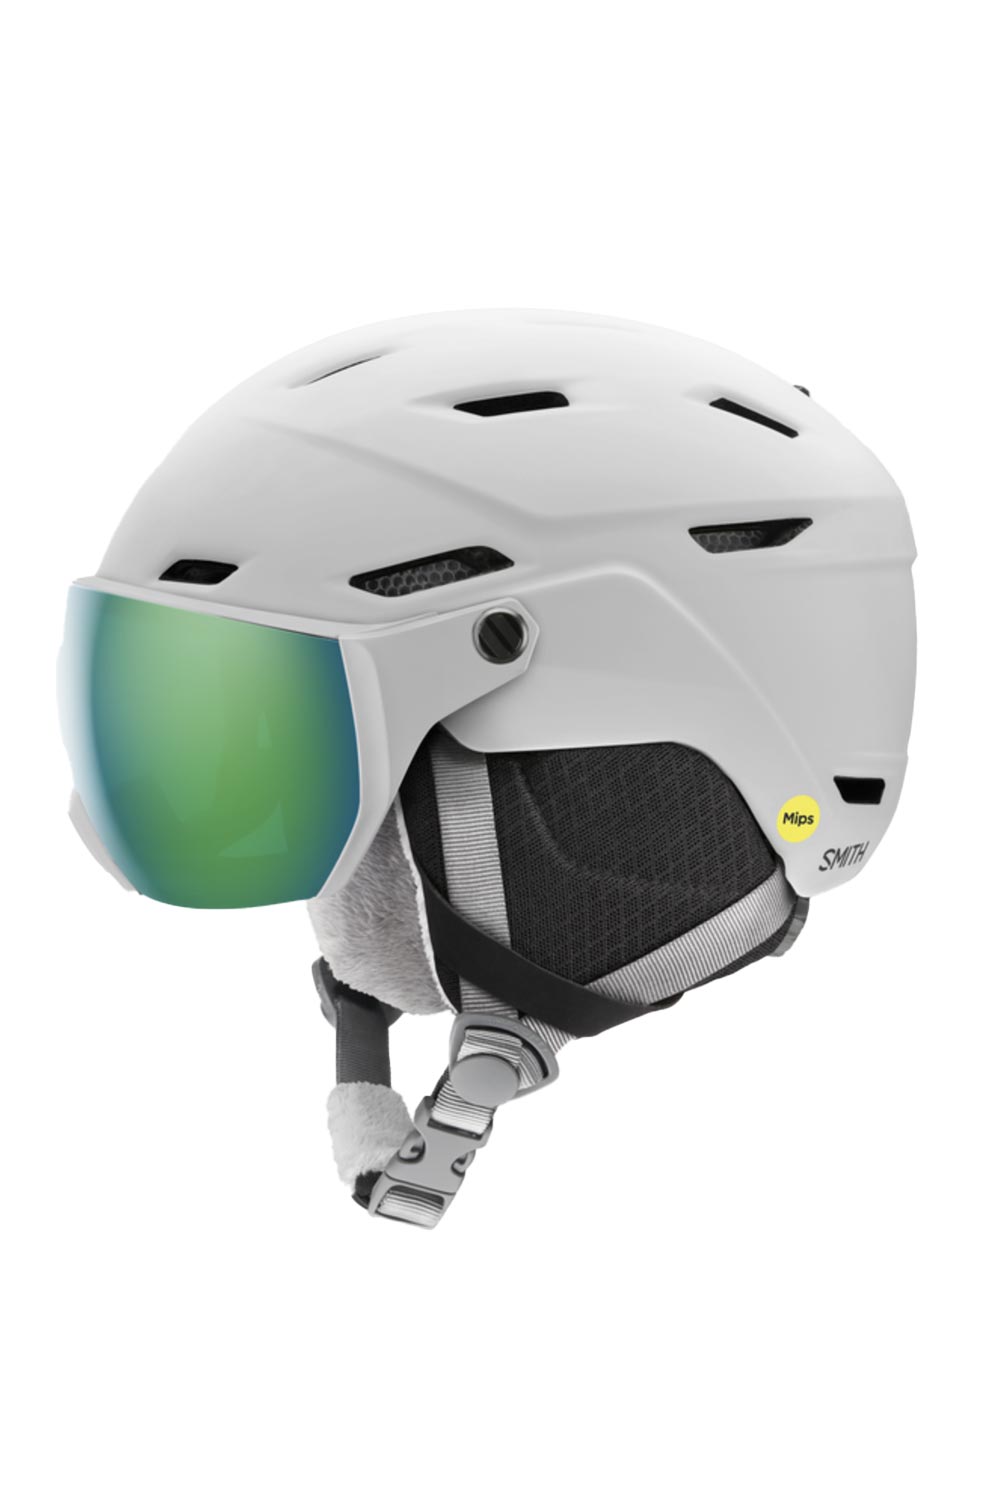 Youth Smith ski helmet with visor, white